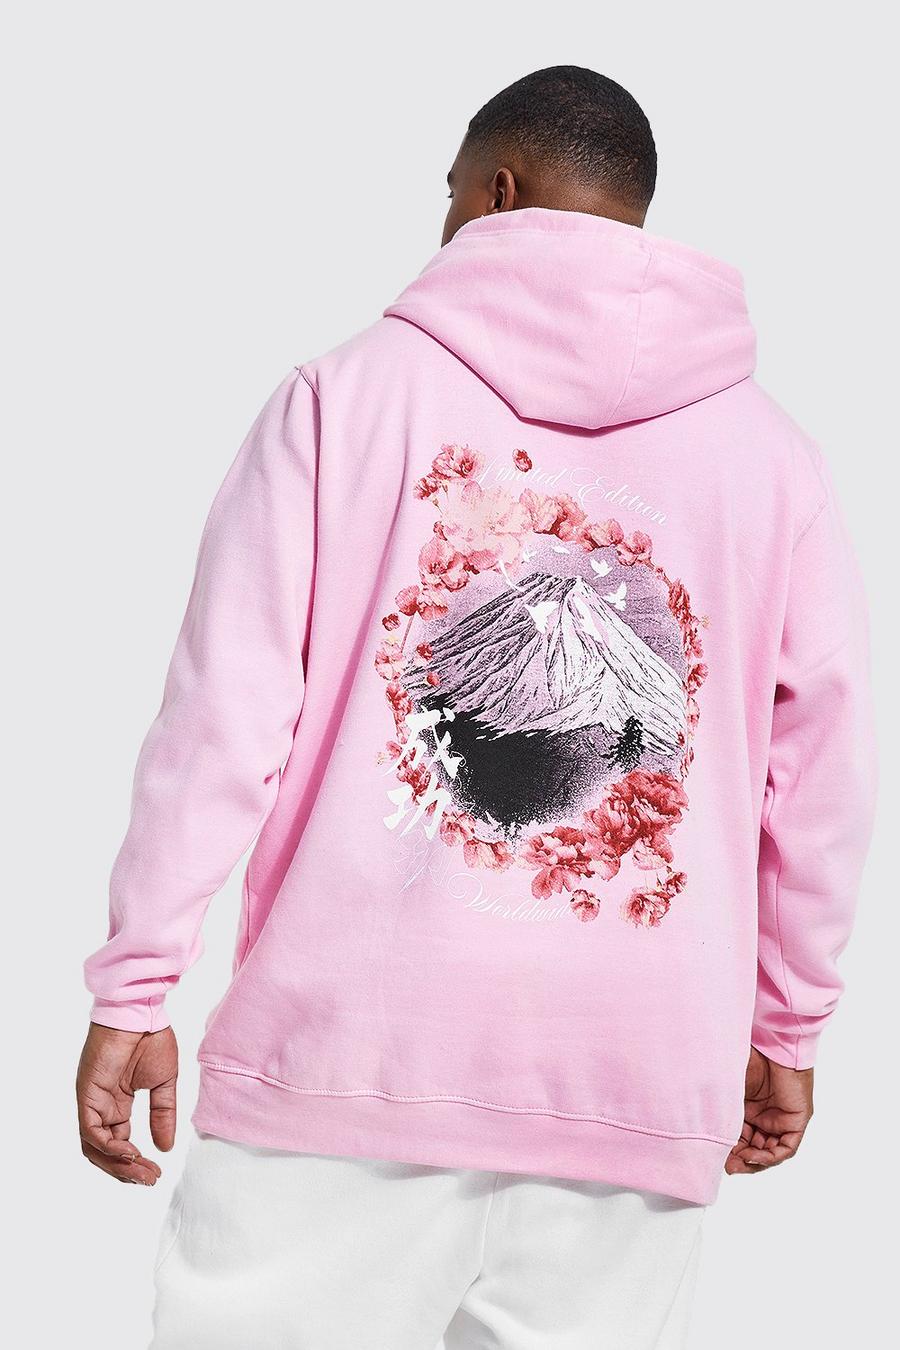 Sudadera Plus con capucha y estampado de flores de cerezo Fuji en la espalda, Light pink rosa image number 1